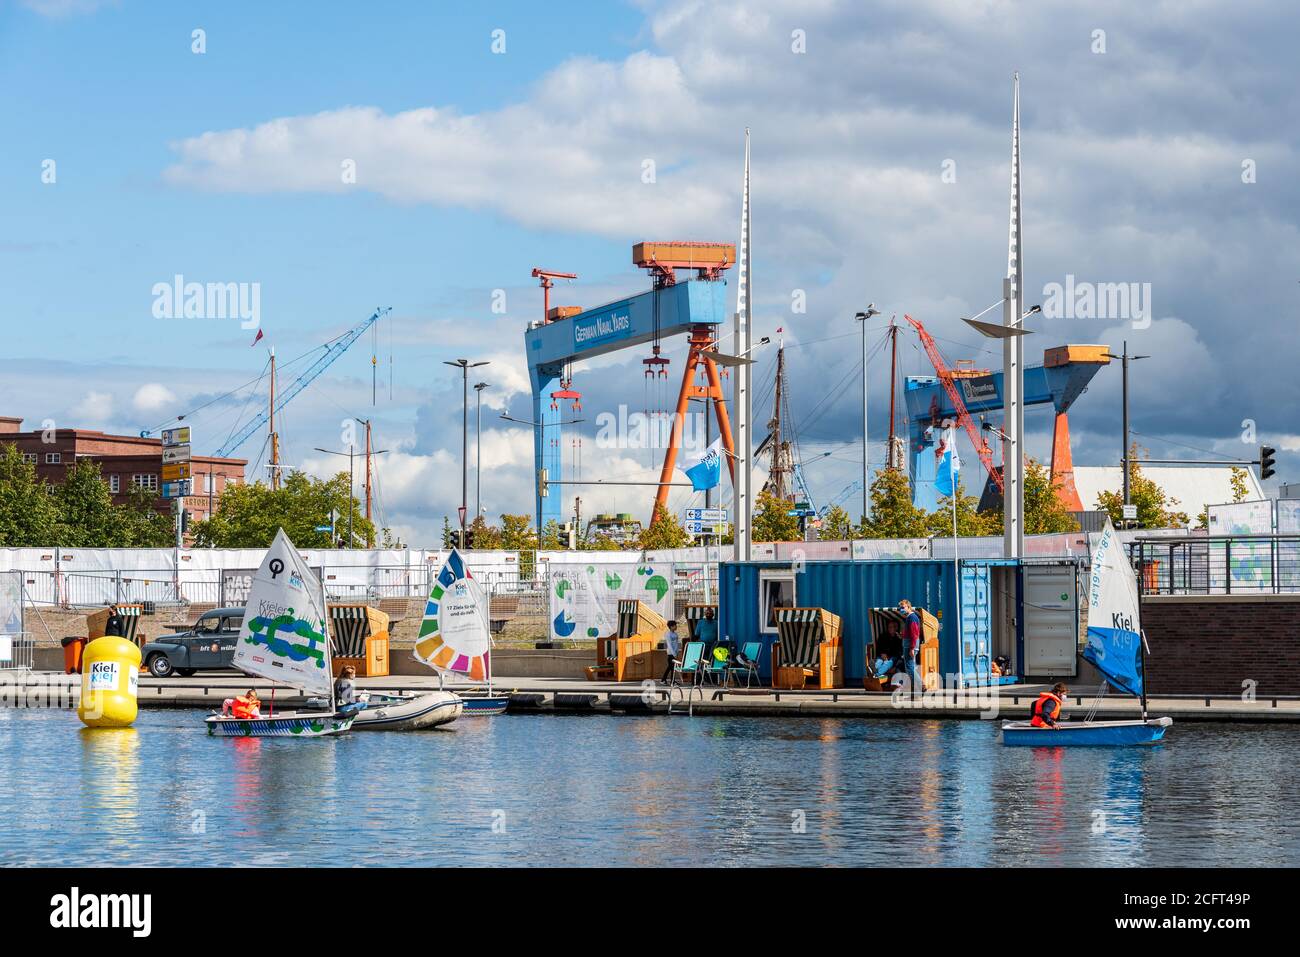 Kiel, 7.9.20 Kieler Woche 2020 Corona macht sich bemerkbar, die Angebote speziell für Kinder in den Erlebnisarealen der Spiellinie und am Bootshafen Stock Photo